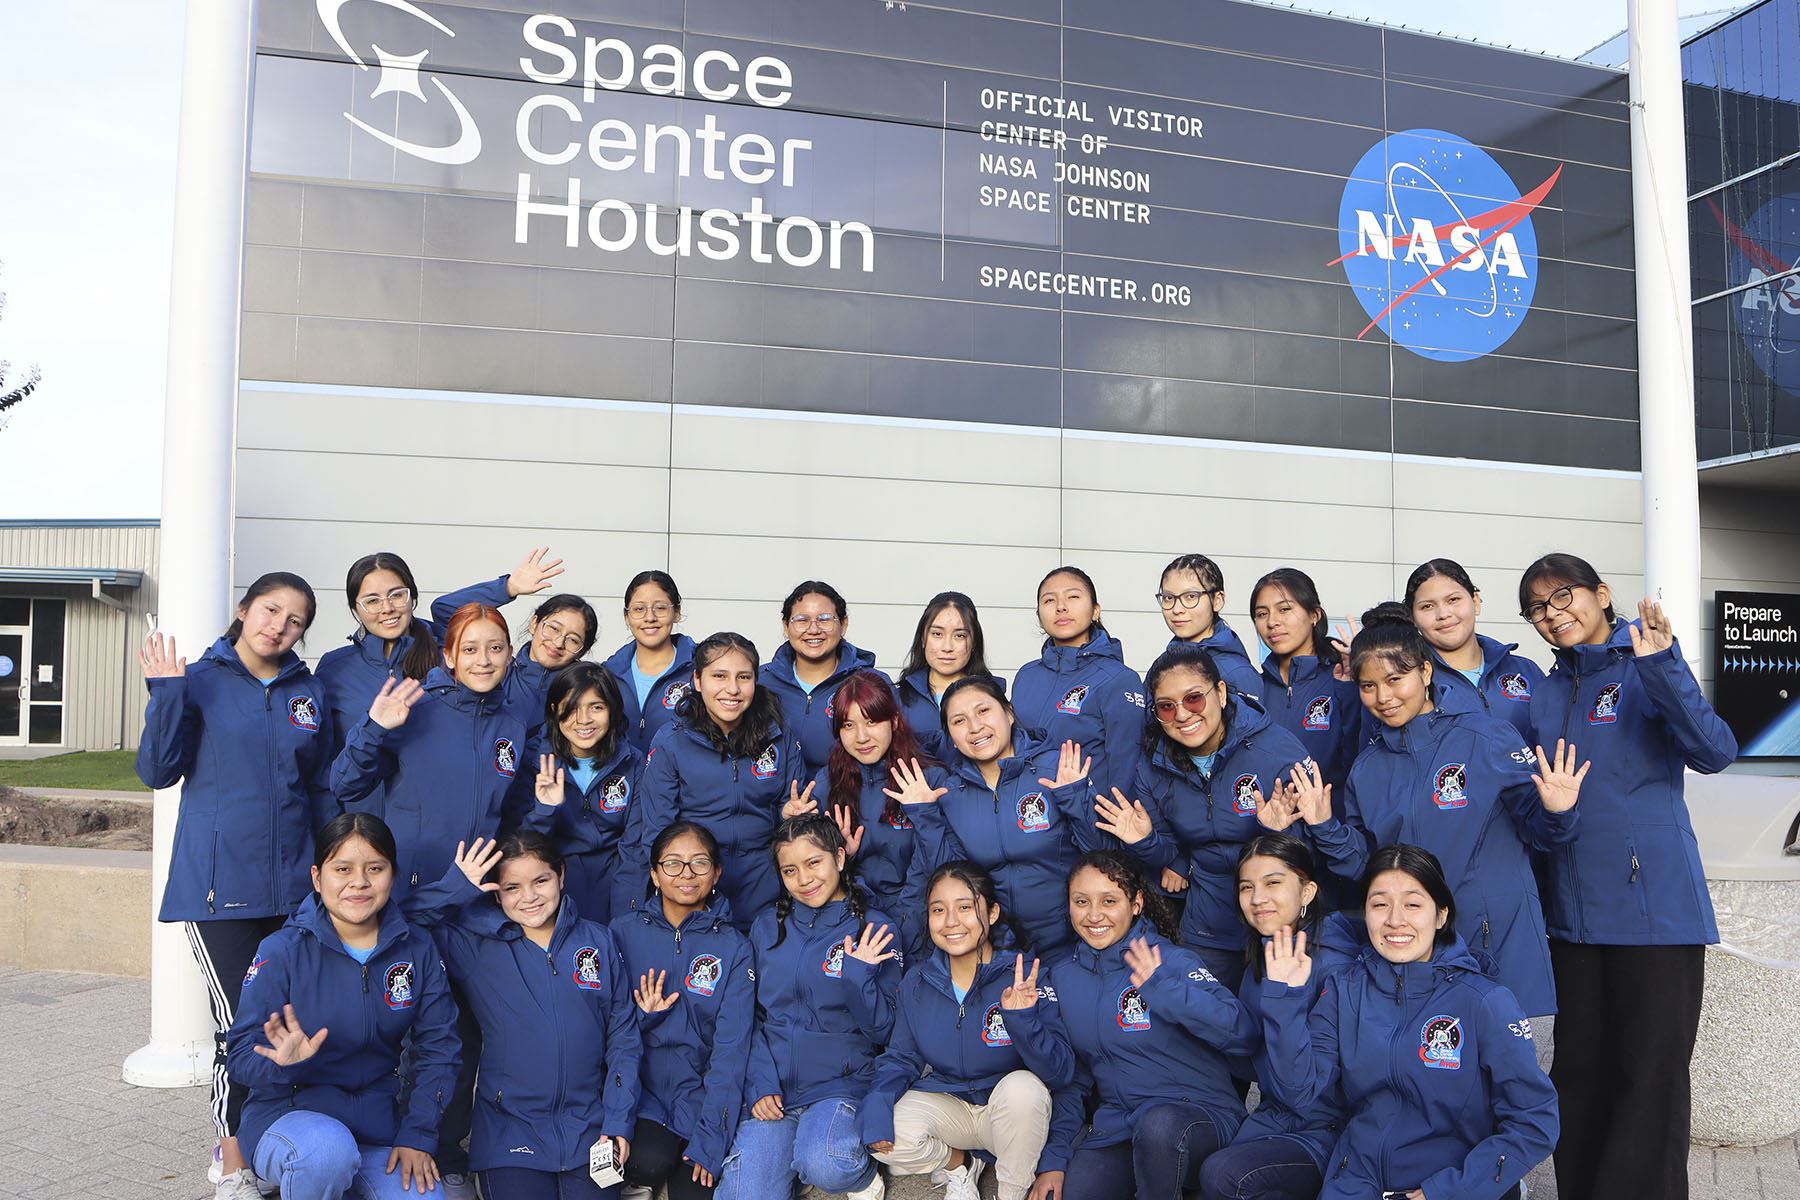 En noviembre, 12 escolares peruanas viajaron al Centro Espacial Houston de la NASA donde fueron parte de un programa educativo en ciencia y tecnología. Foto: She is